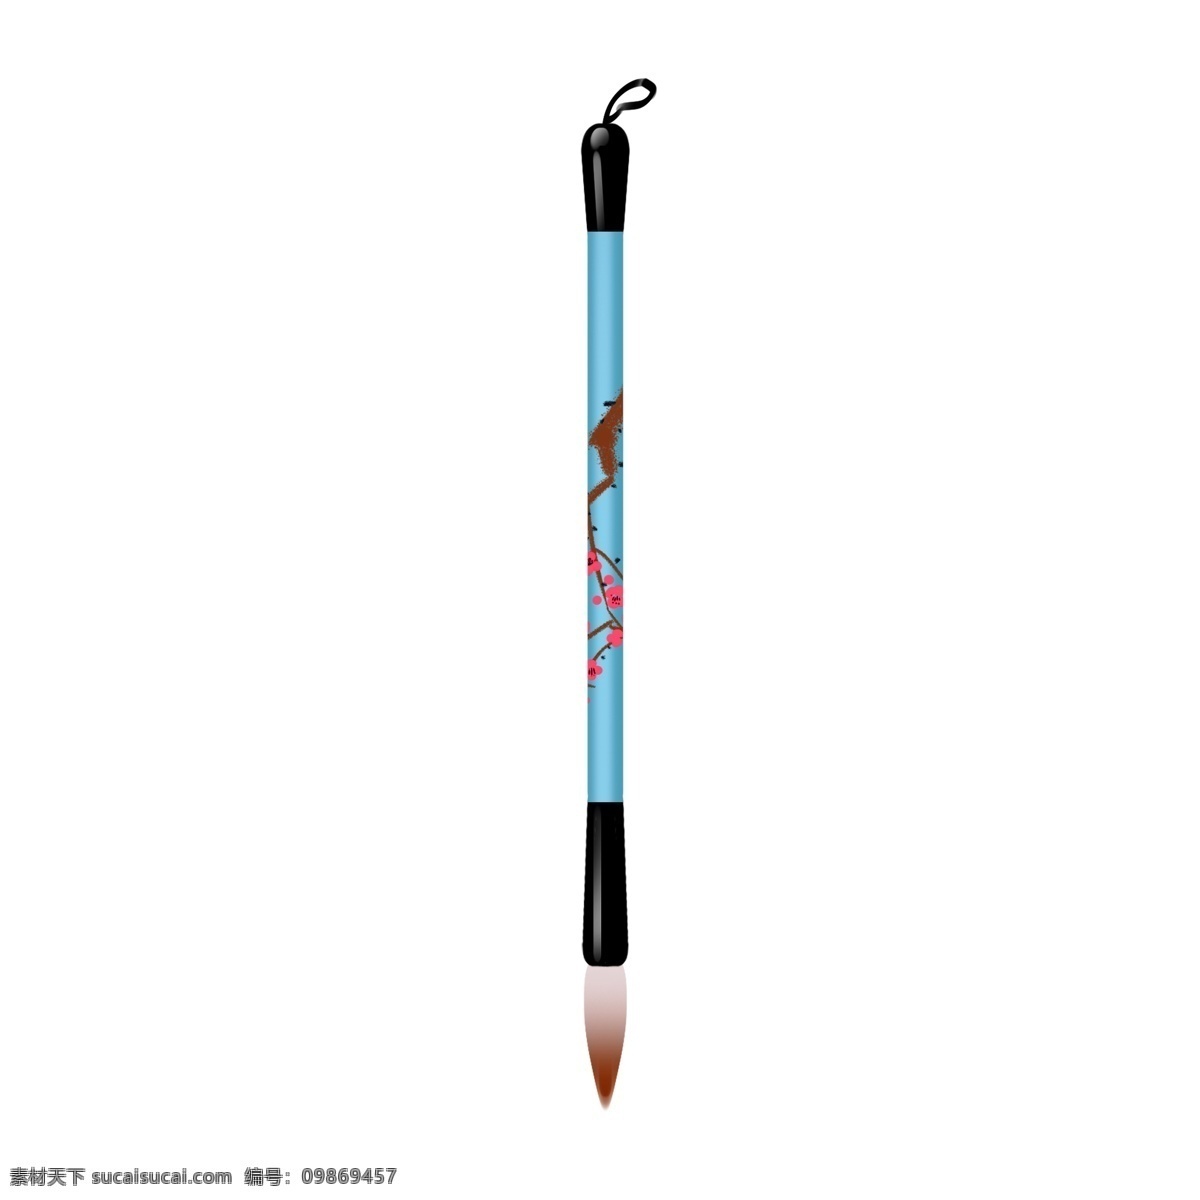 写字 毛笔 卡通 插画 蓝色的毛笔 卡通的插画 笔的插画 写字用笔 学习用品 文具的笔 长长的毛笔